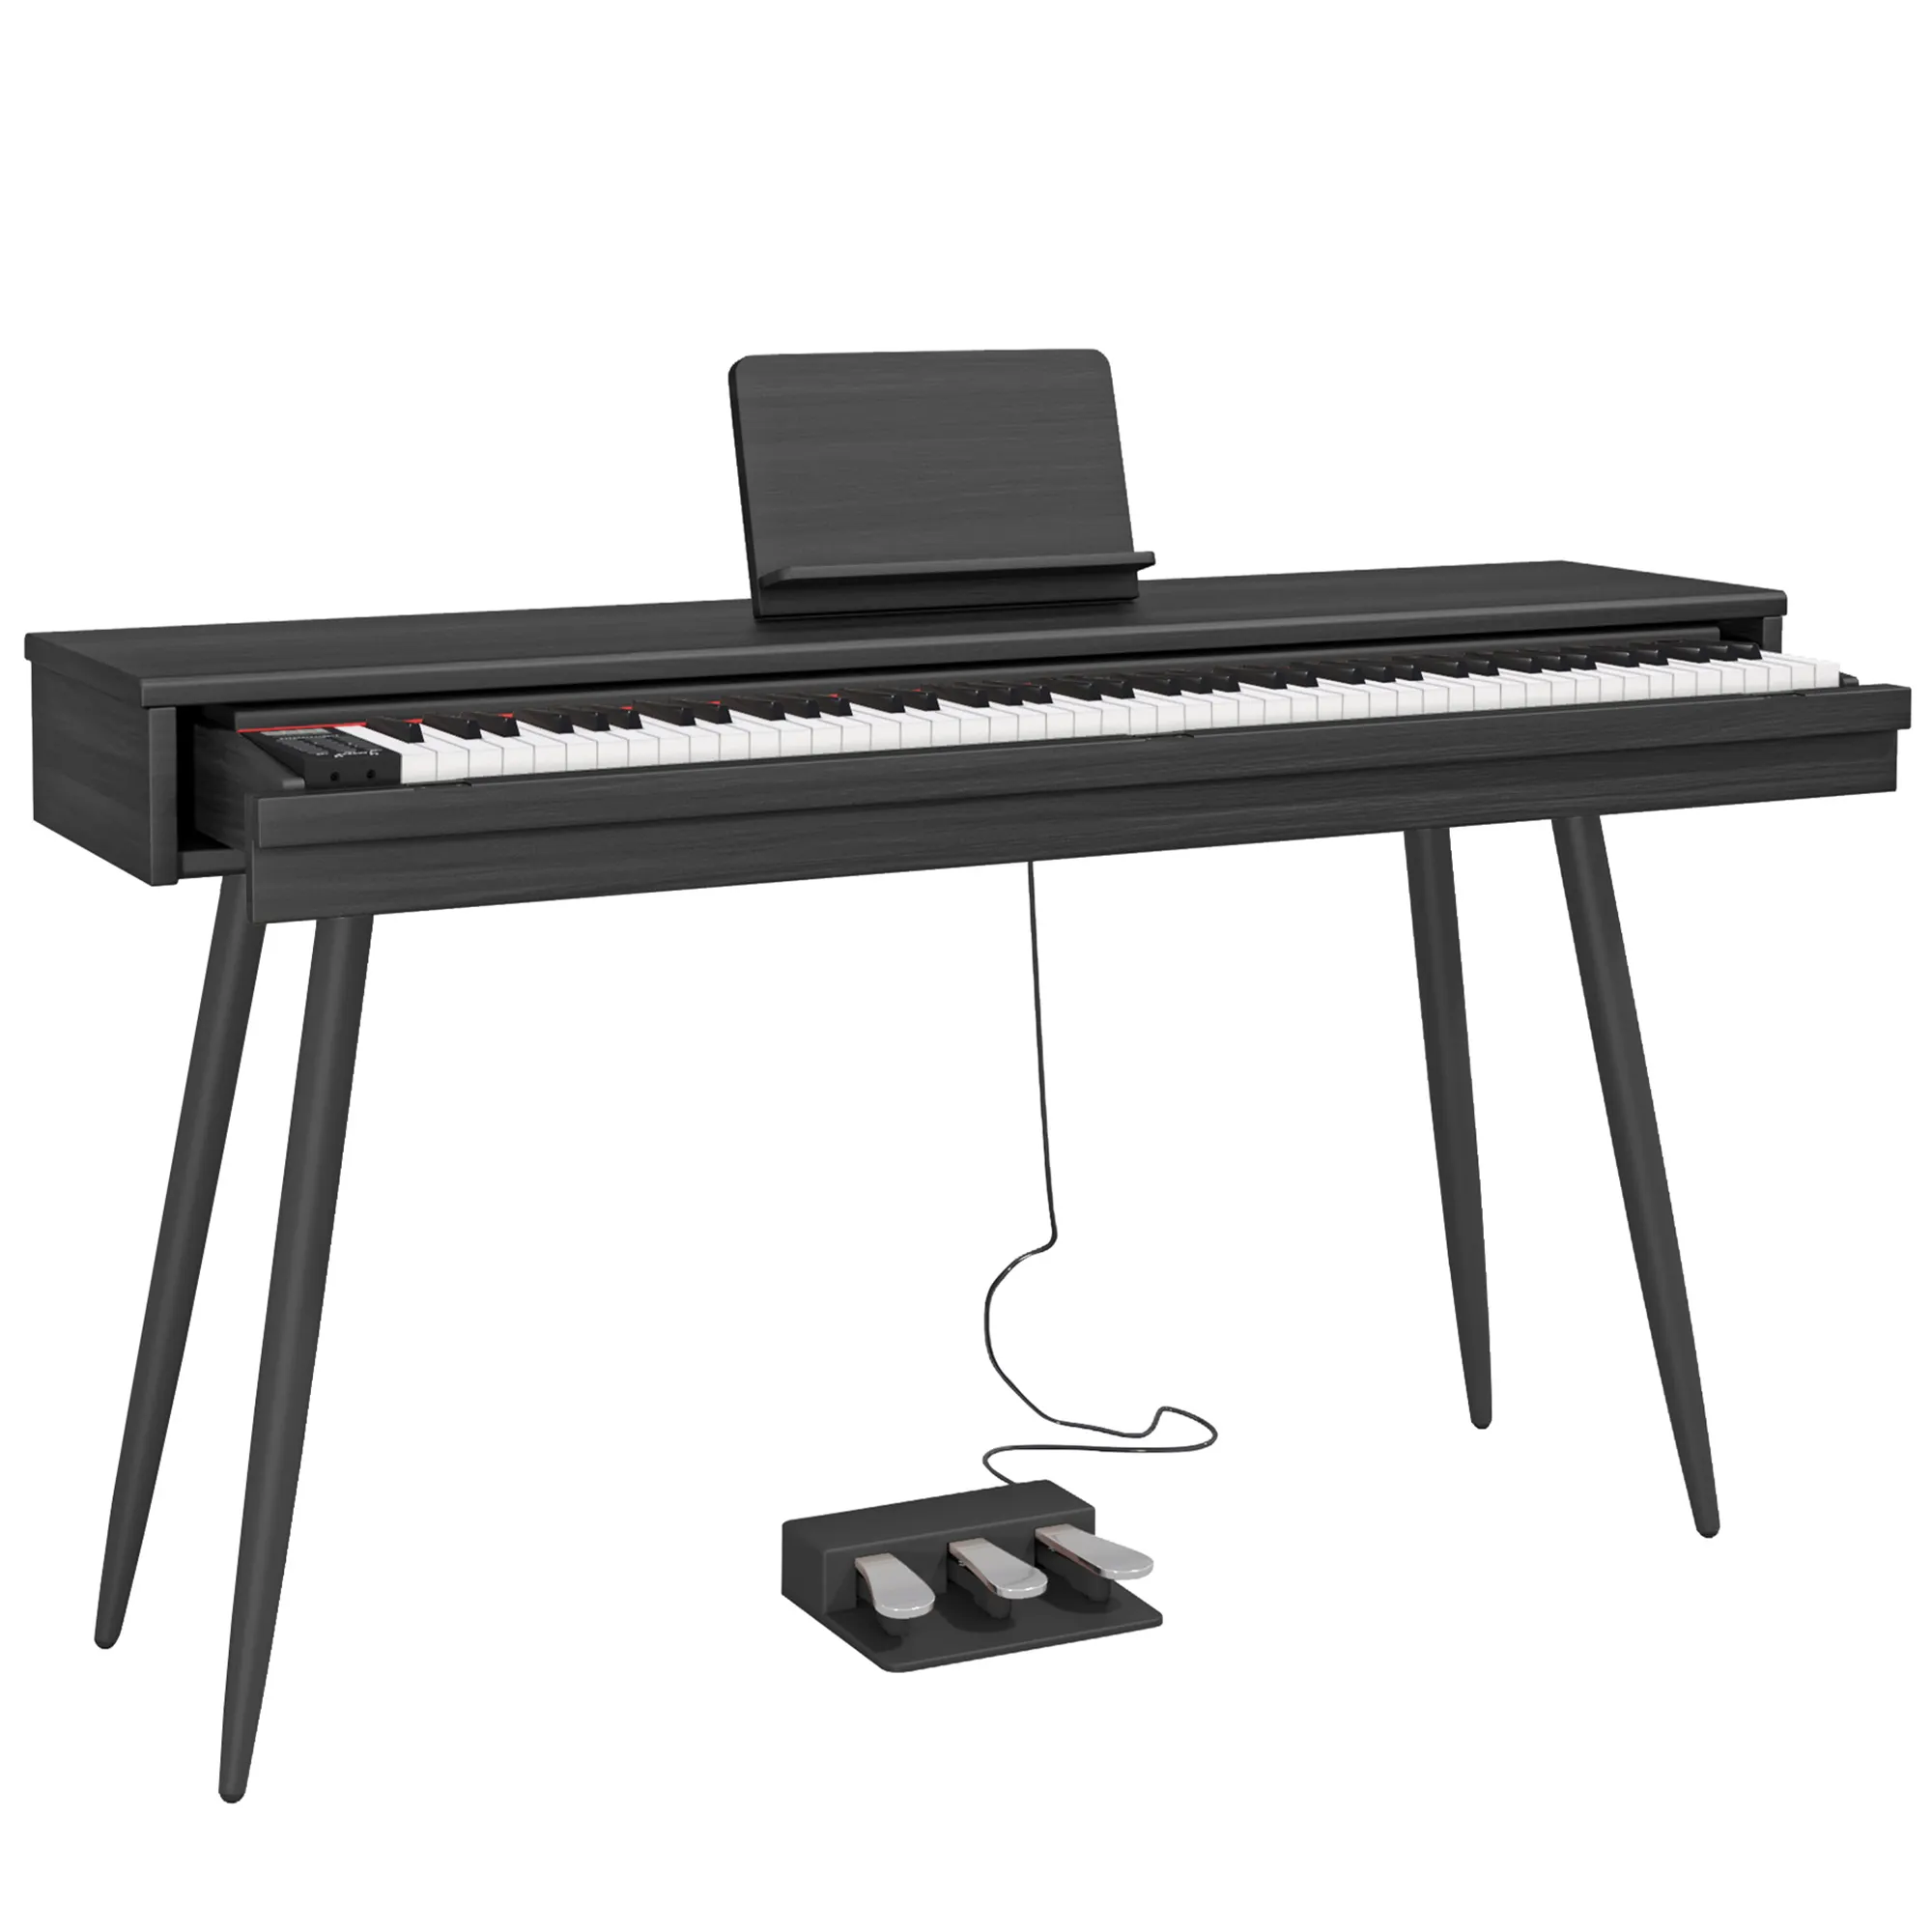 BLANTH clavier de piano à tiroir piano électronique piano numérique instruments de musique électriques